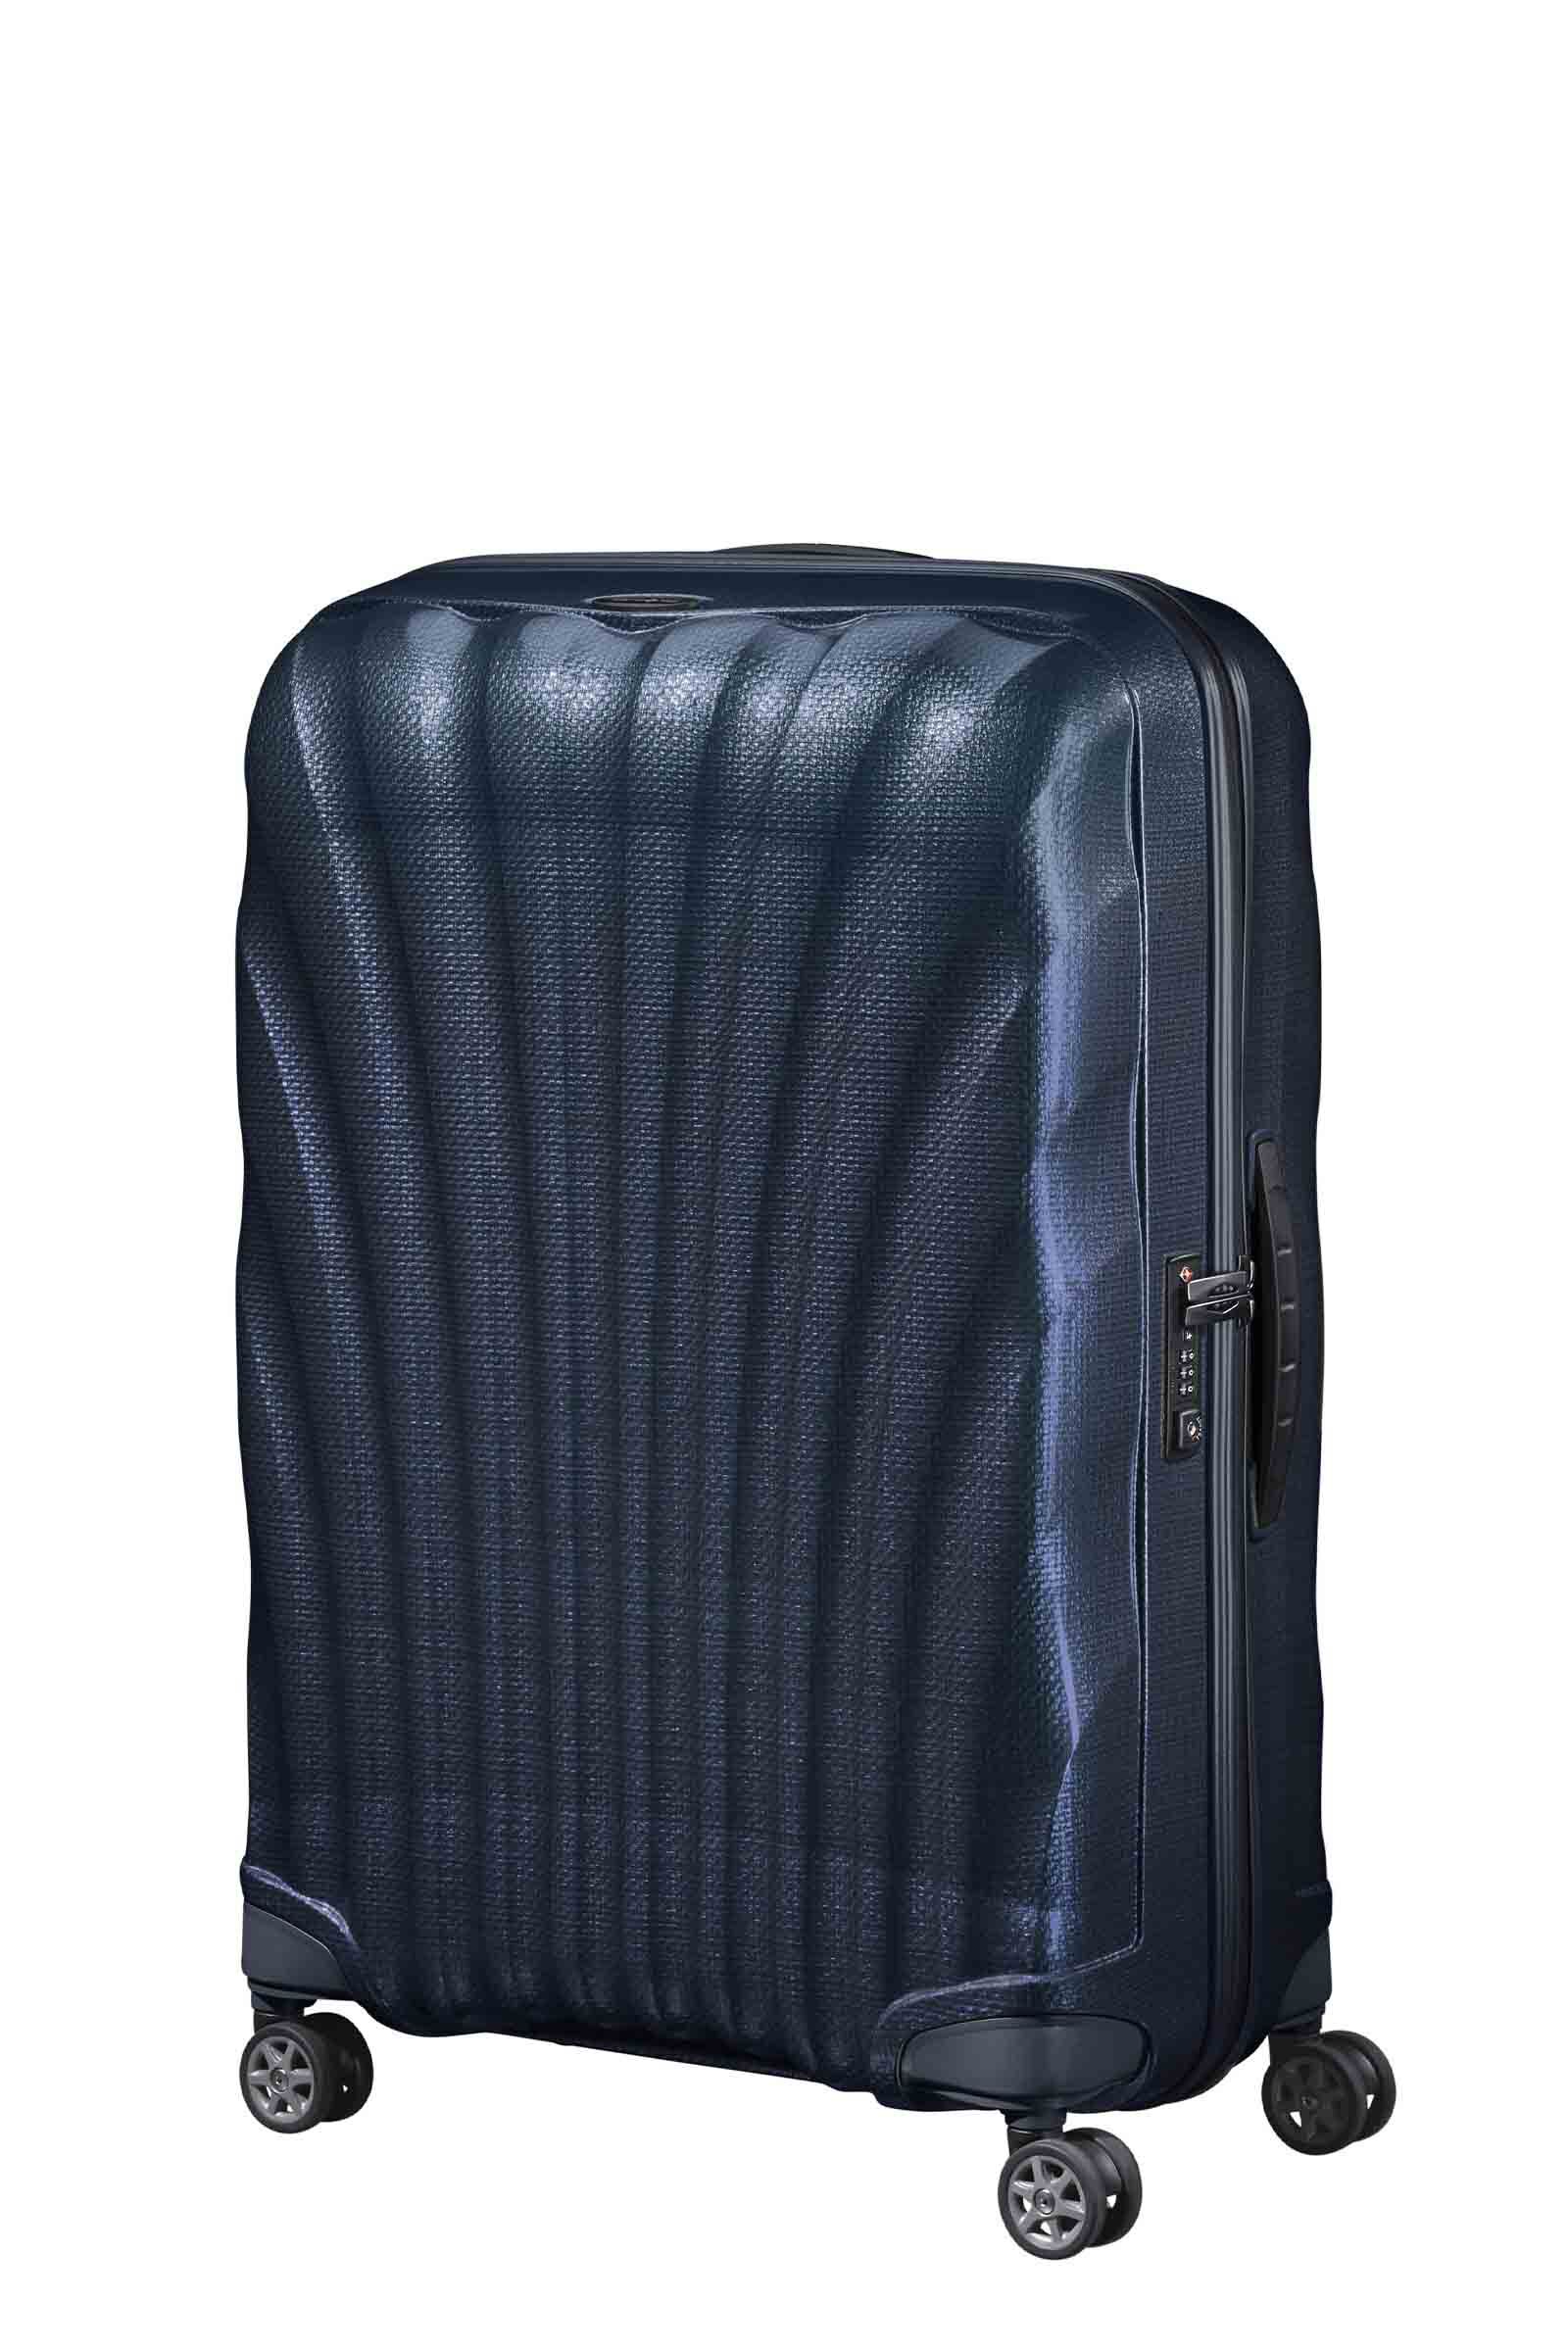 美品 サムソナイト コスモライト スピナー 94L スーツケース 軽量 大容量